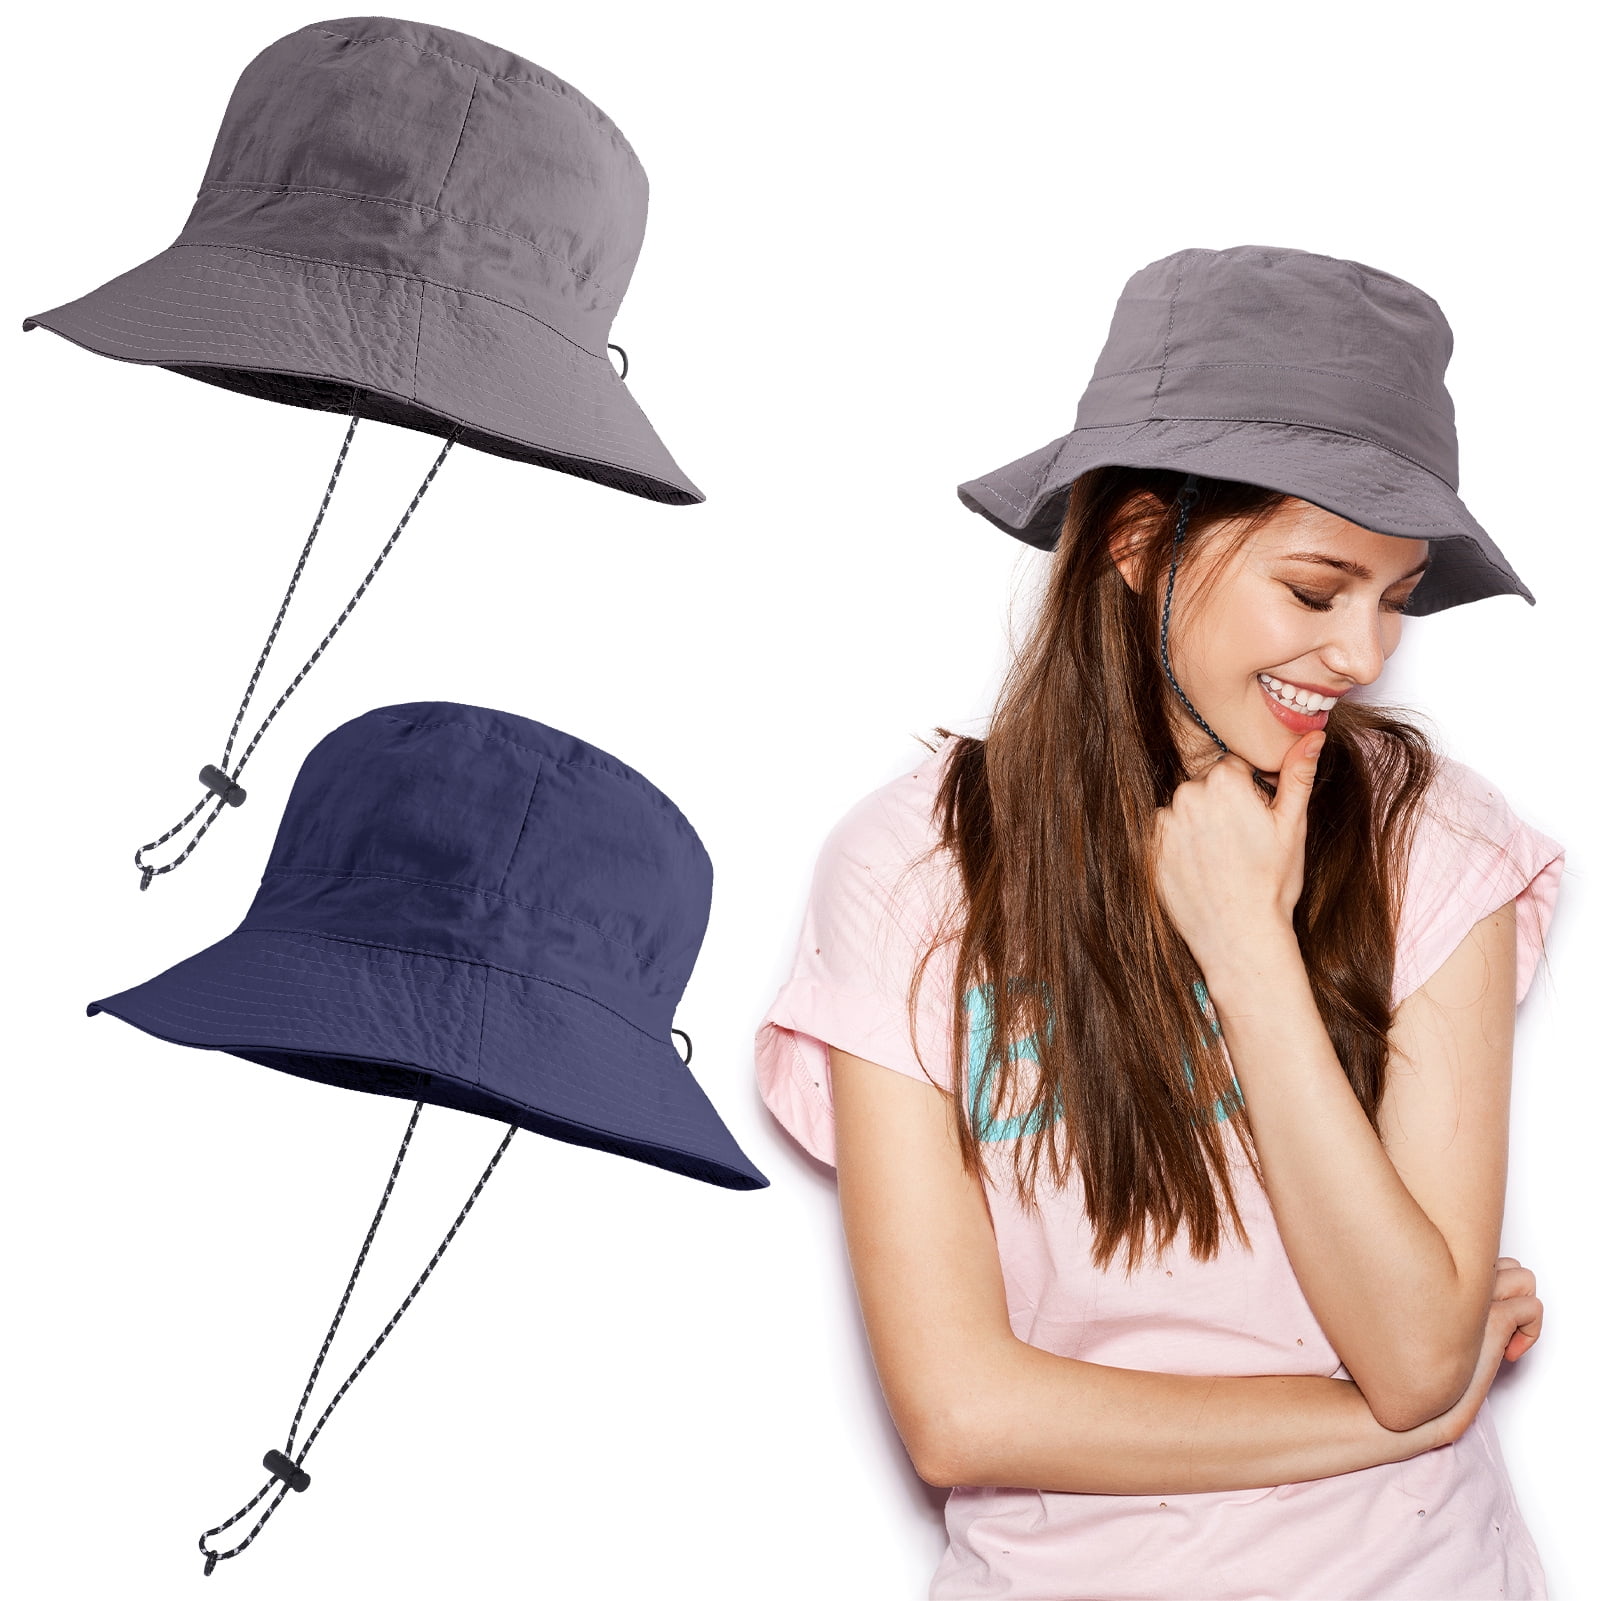 Bucket Hat For Men Women - Cotton Packable Fishing Cap, Navy S/M 